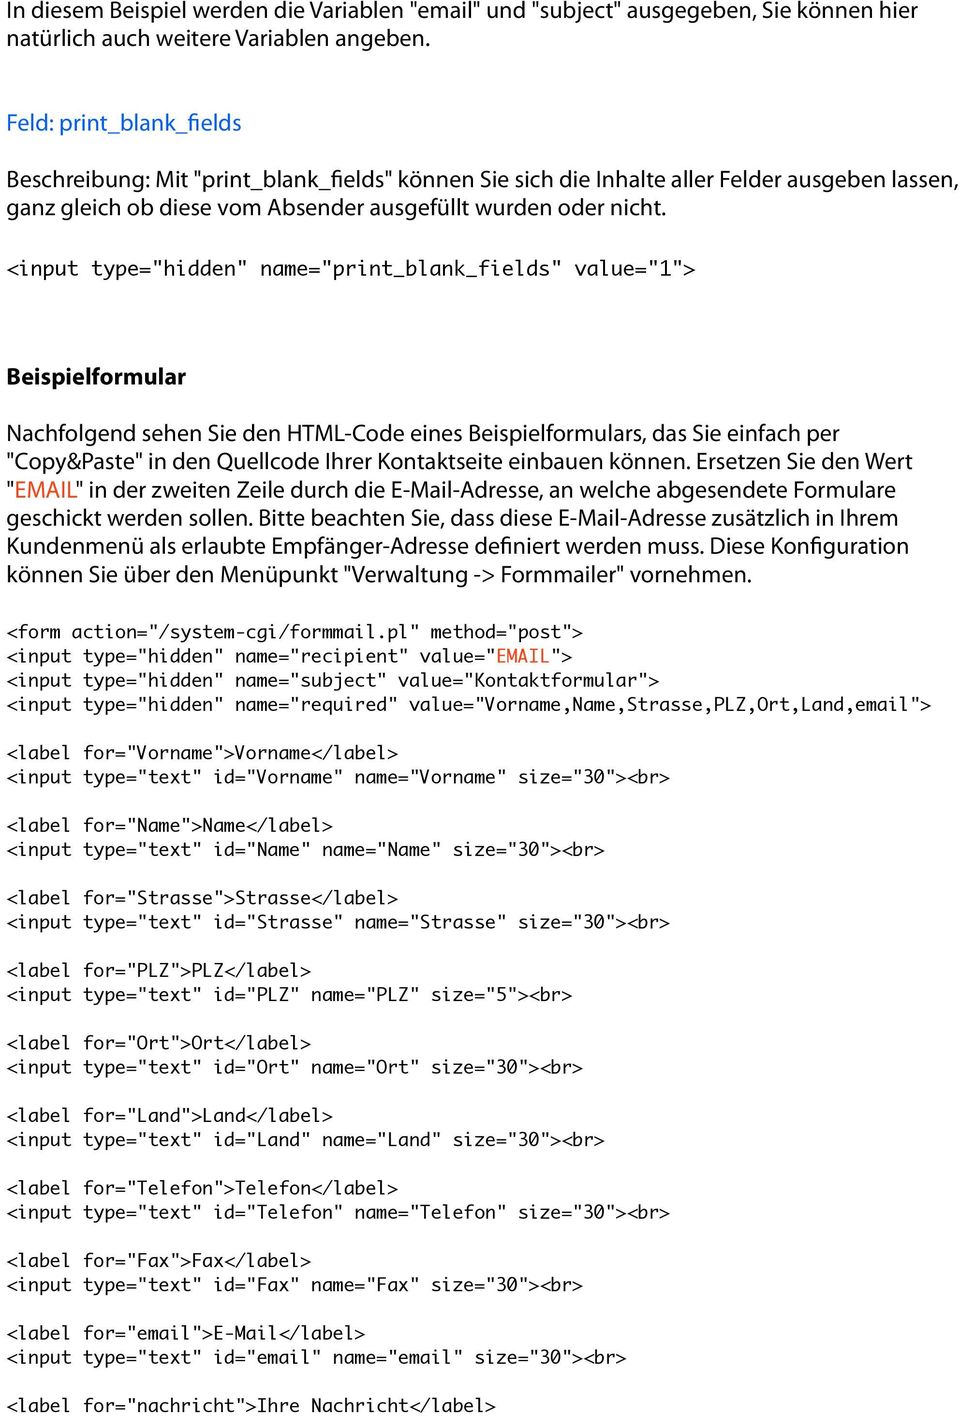 <input type="hidden" name="print_blank_fields" value="1"> Beispielformular Nachfolgend sehen Sie den HTML-Code eines Beispielformulars, das Sie einfach per "Copy&Paste" in den Quellcode Ihrer